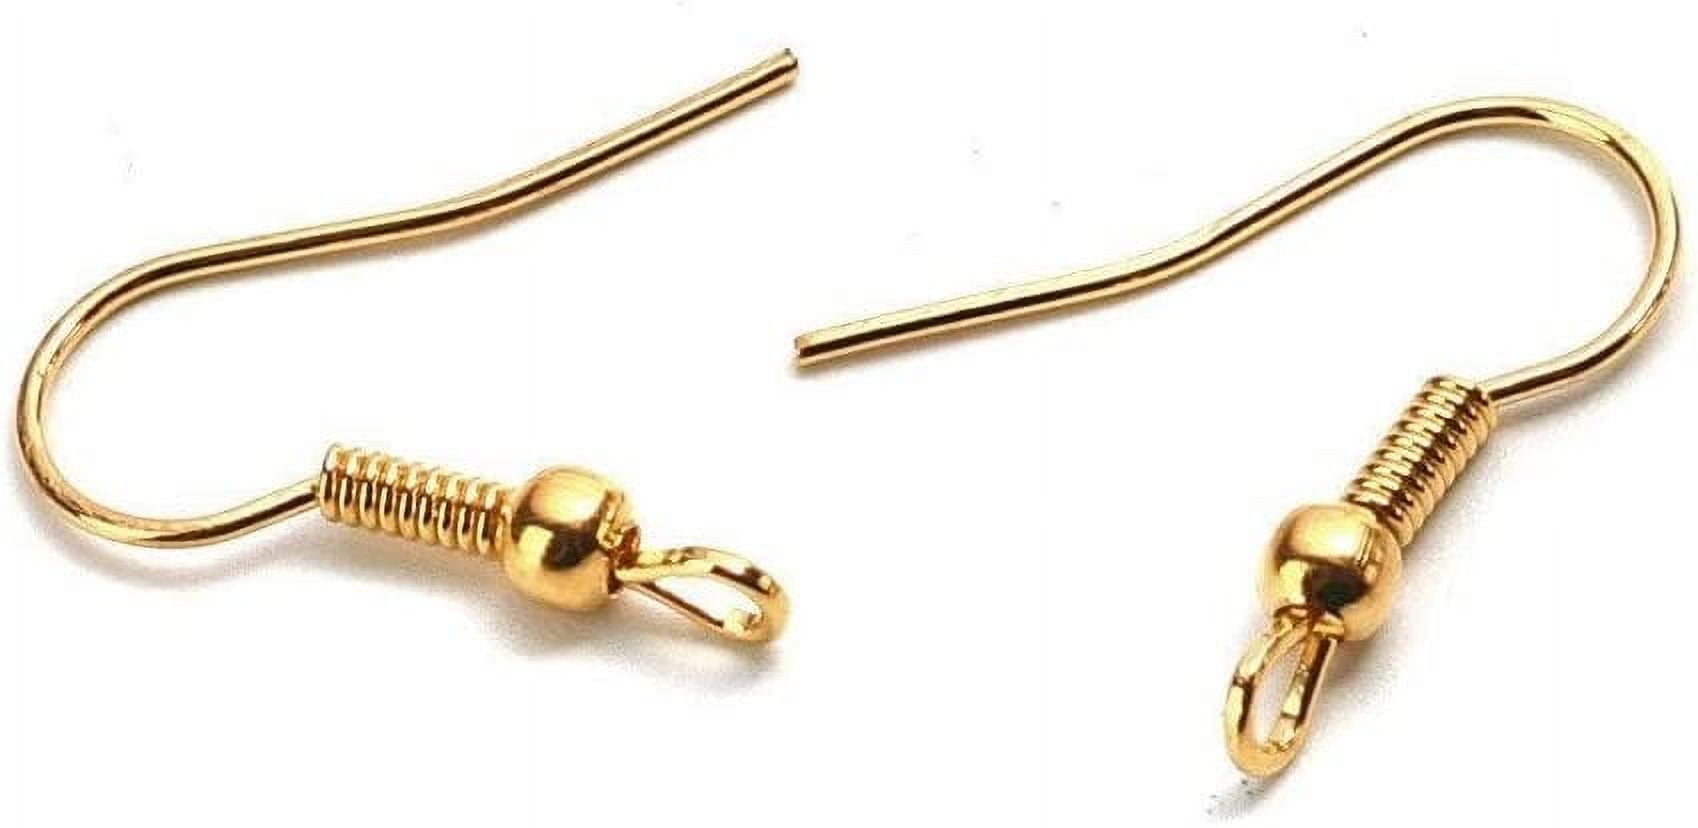 ZUARFY Earring Hooks for Making Earrings 100 Pieces/set Earring